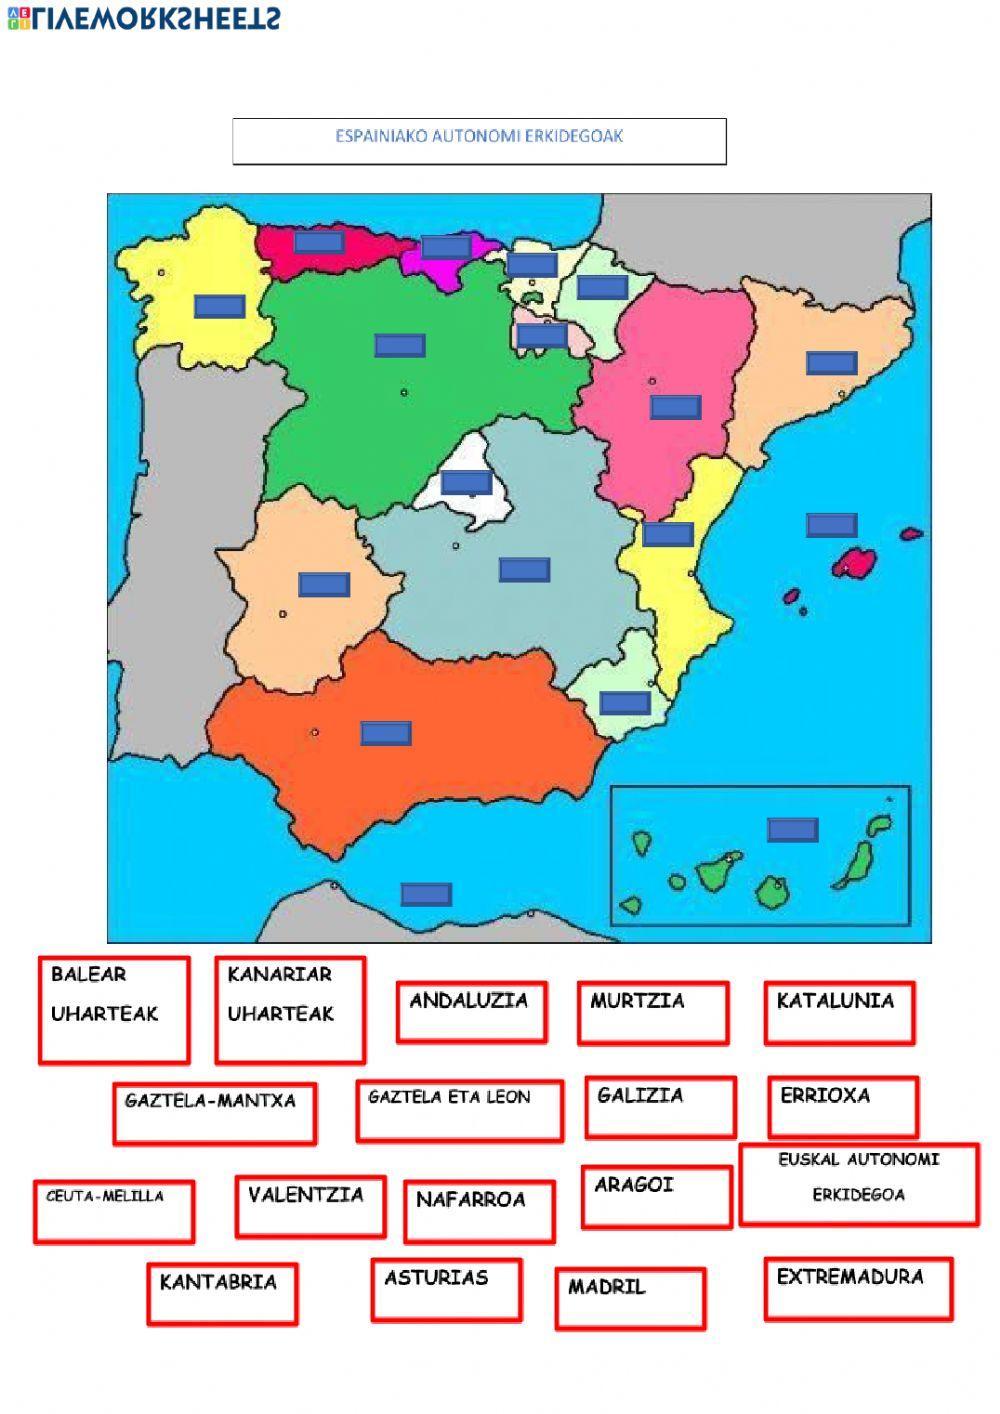 Espainiako autonomi erkidegoak